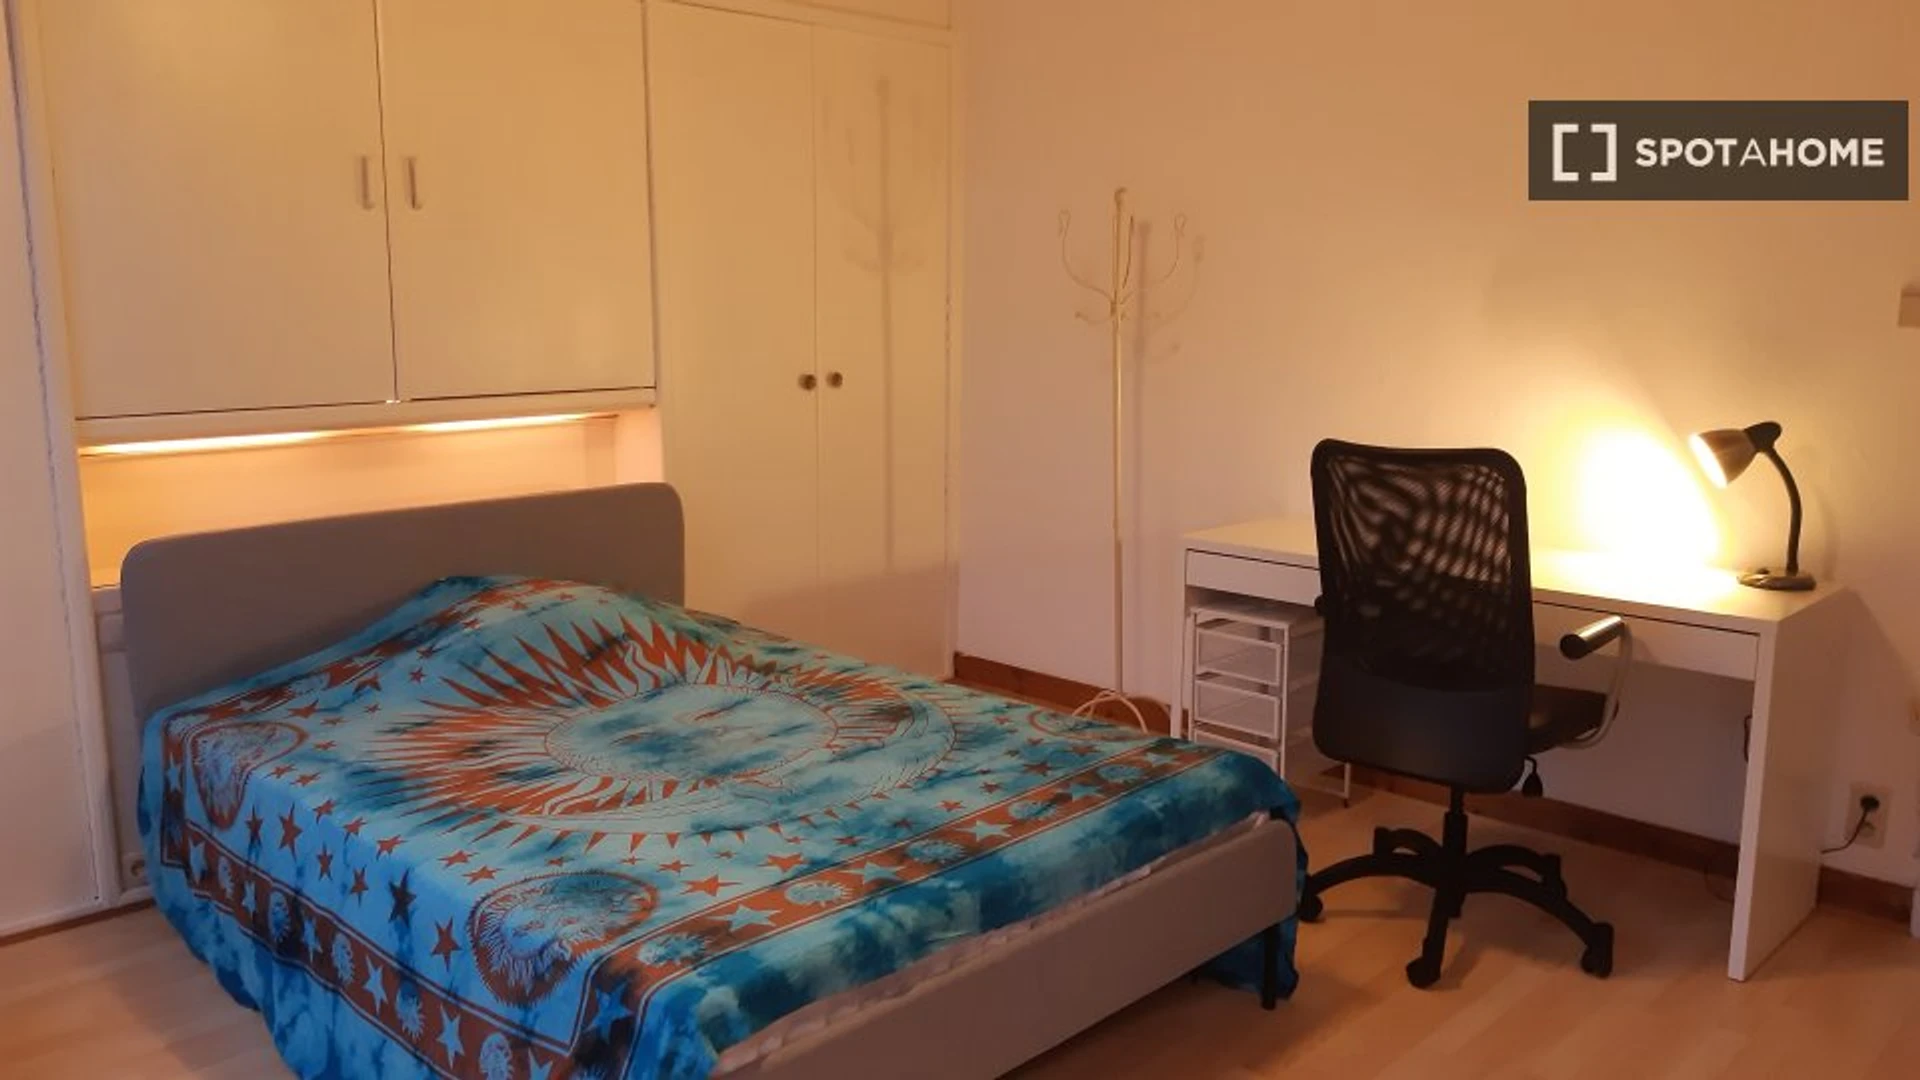 Liège de çift kişilik yataklı kiralık oda